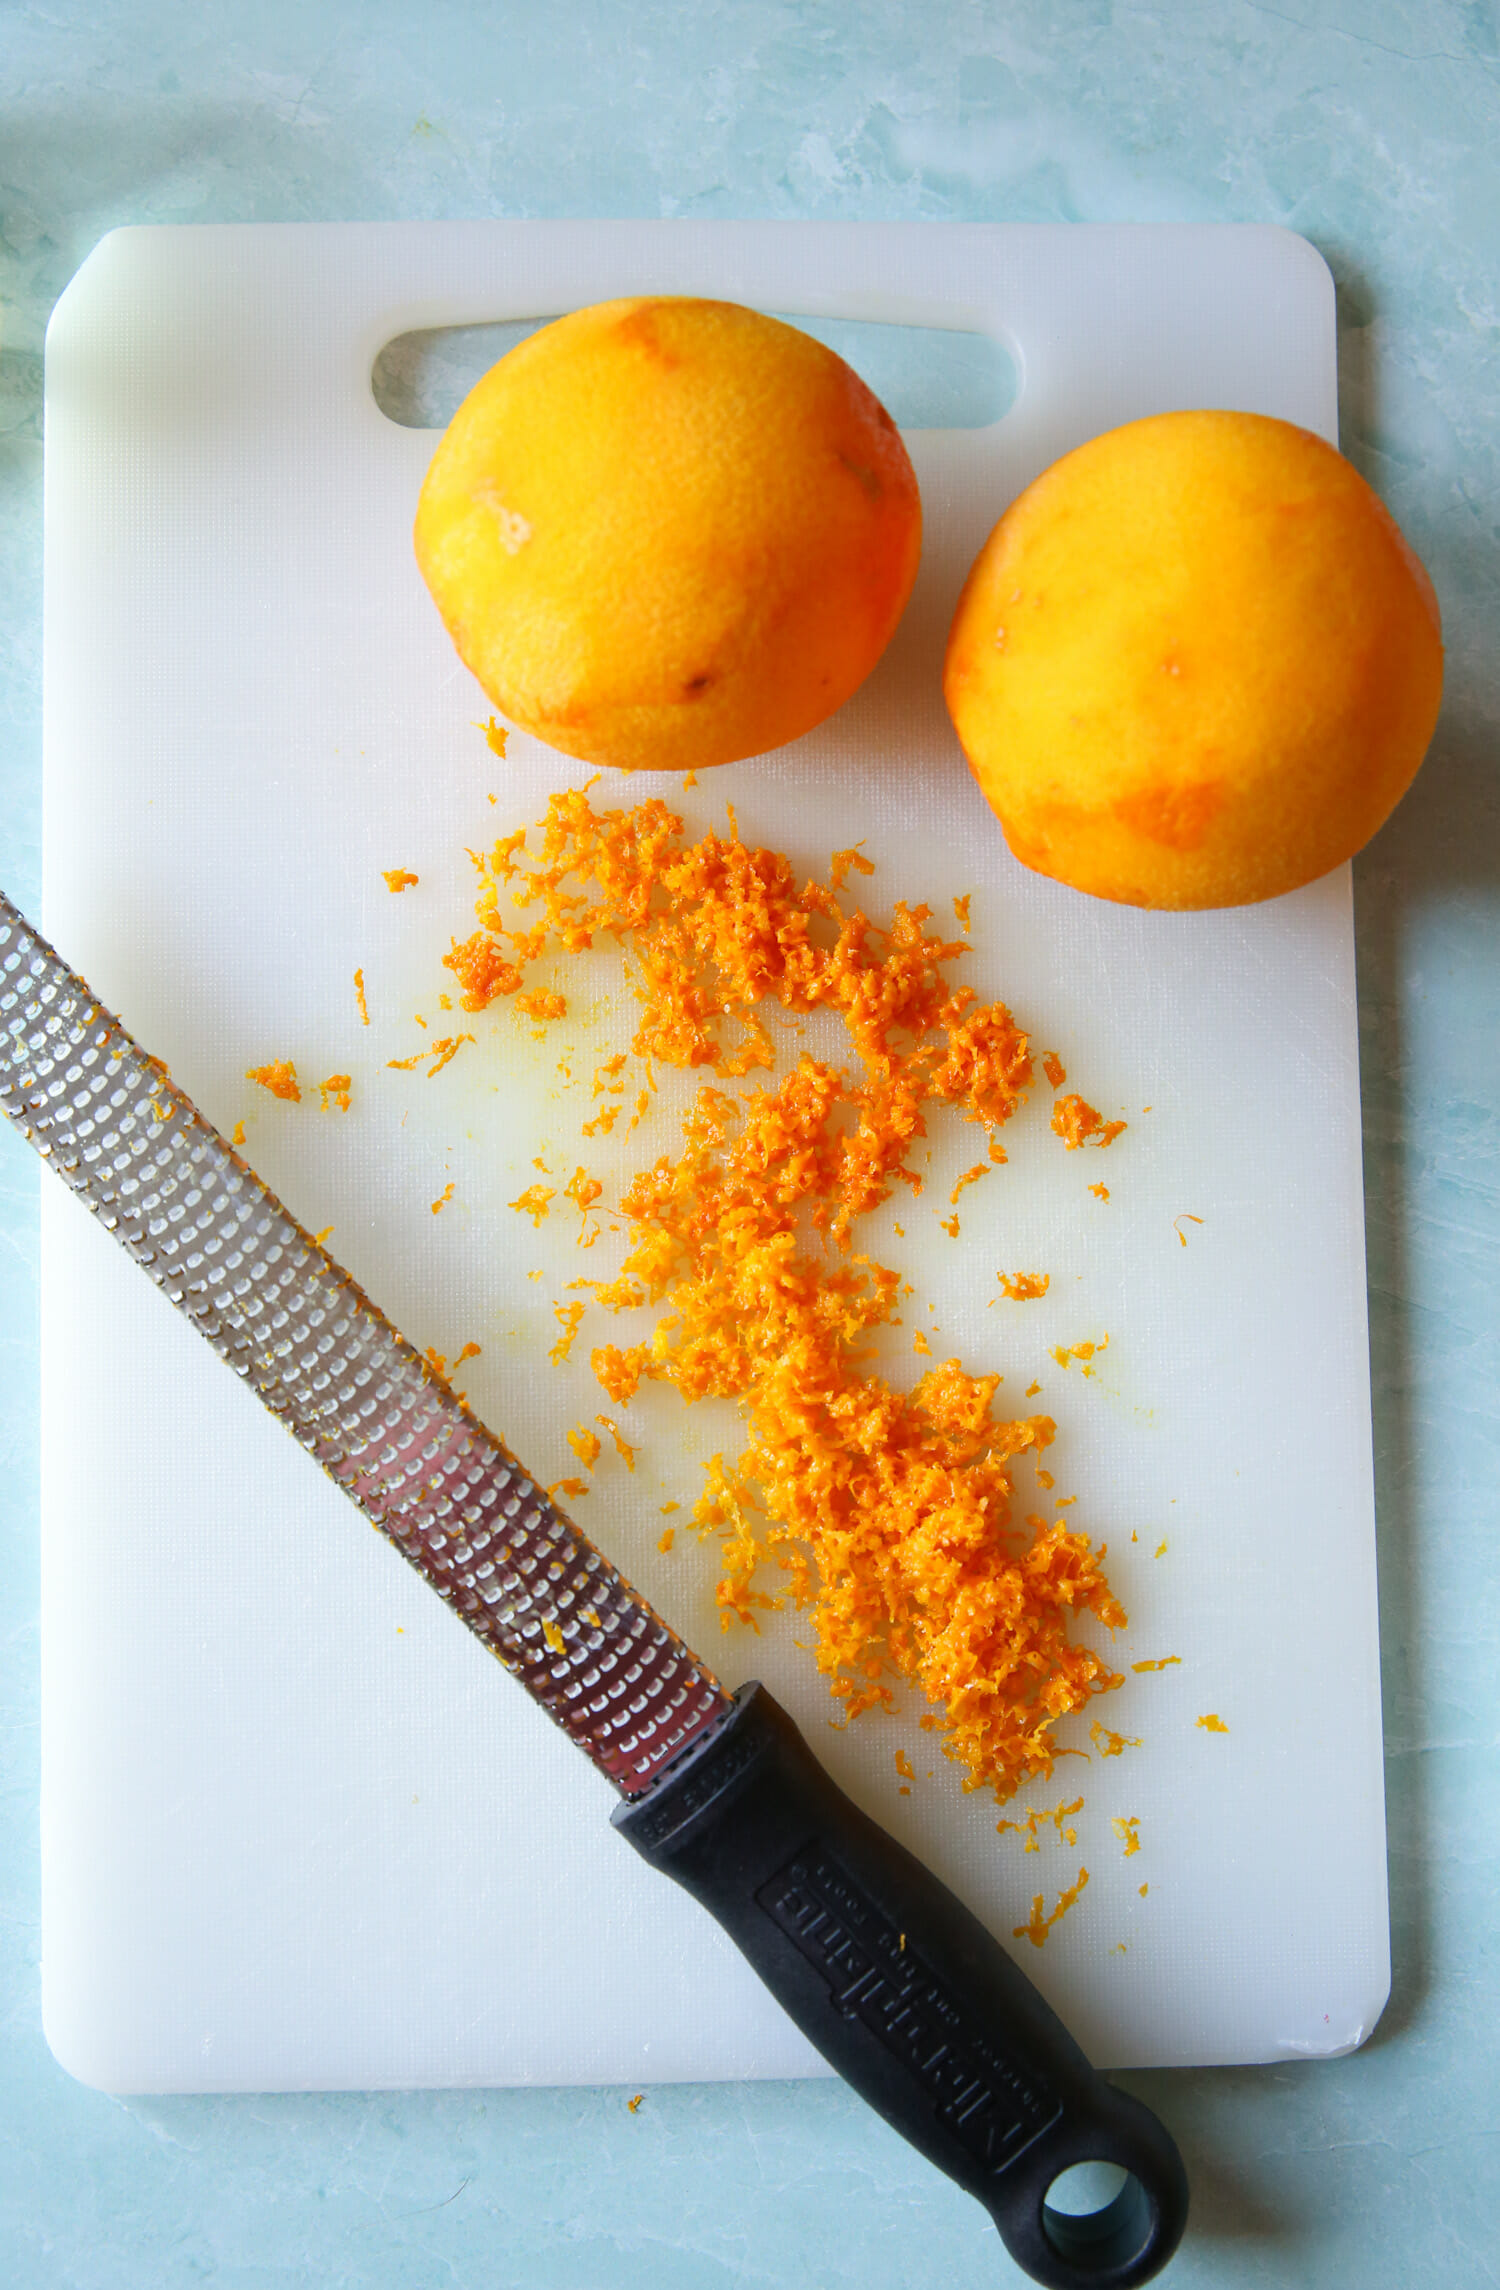 zested oranges